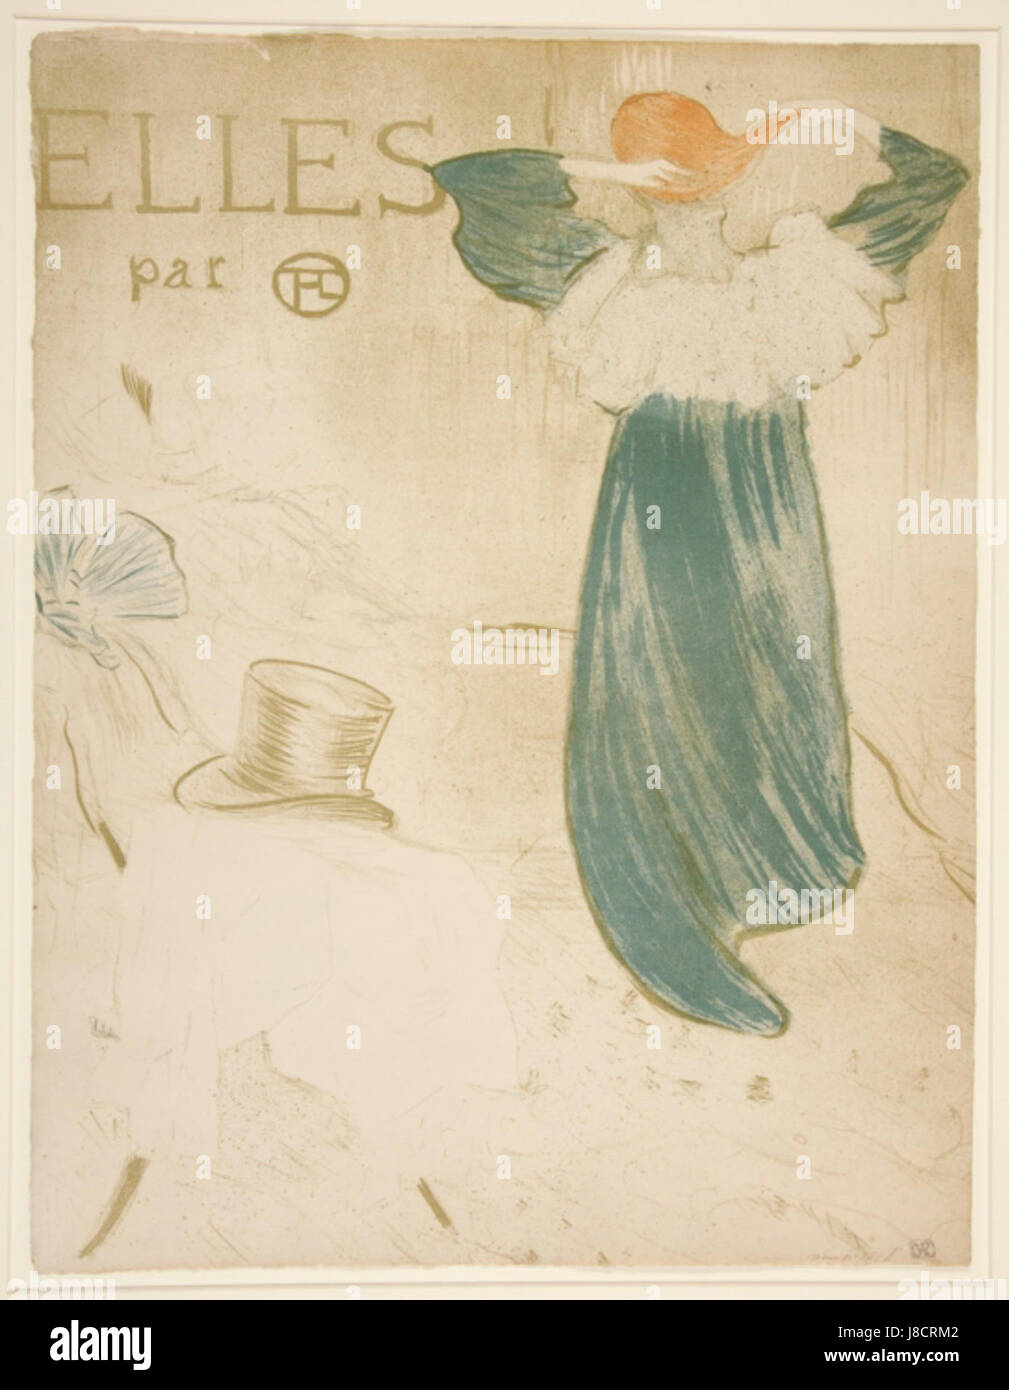 Elles Par T L Frontispiz von Henri de Toulouse-Lautrec 1896 Stockfoto